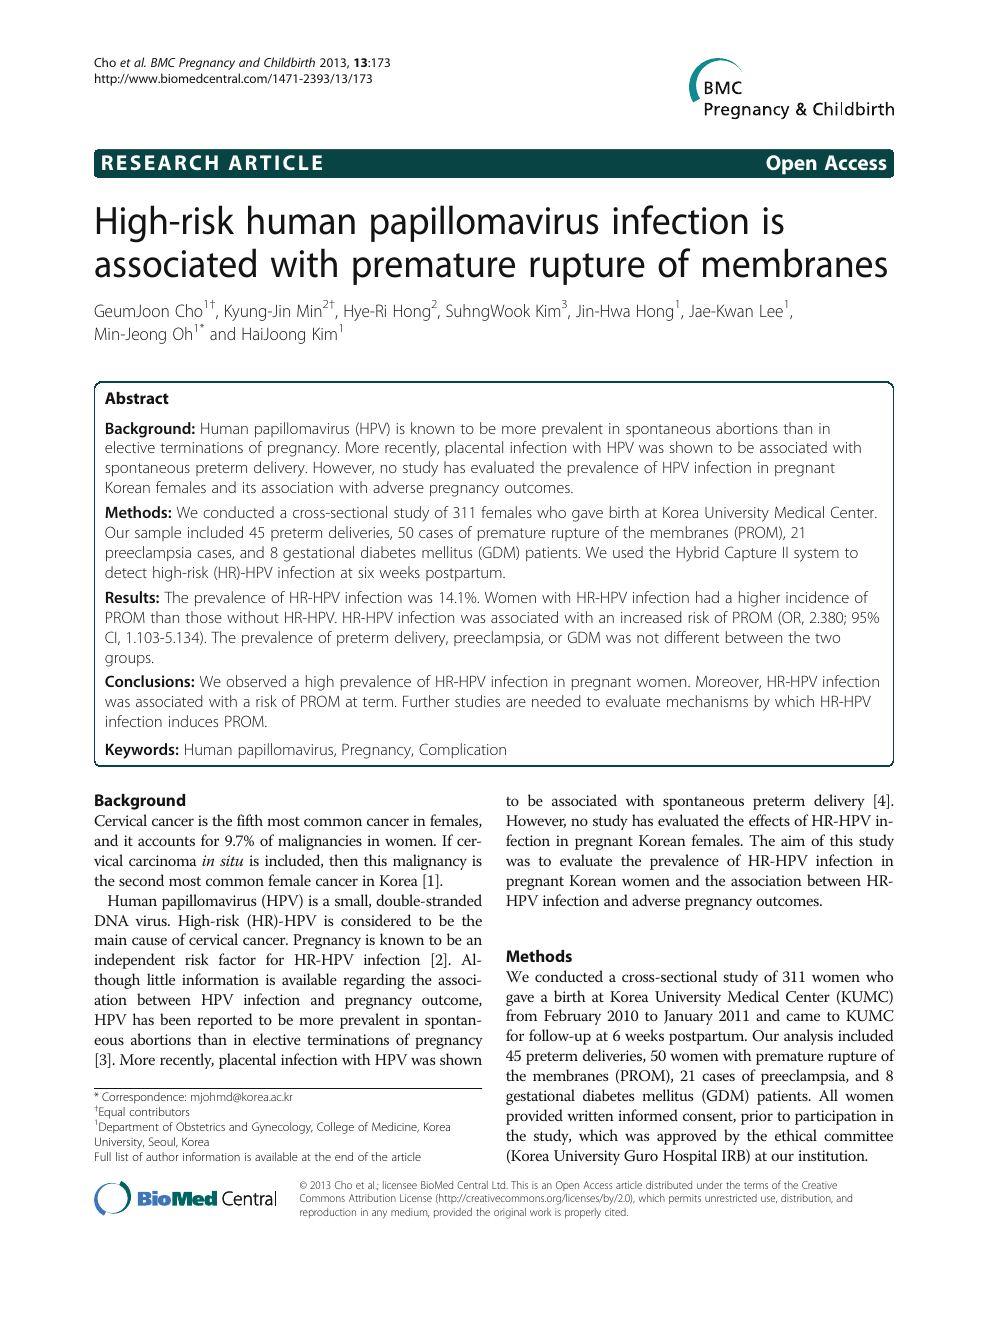 human papillomavirus infection when pregnant